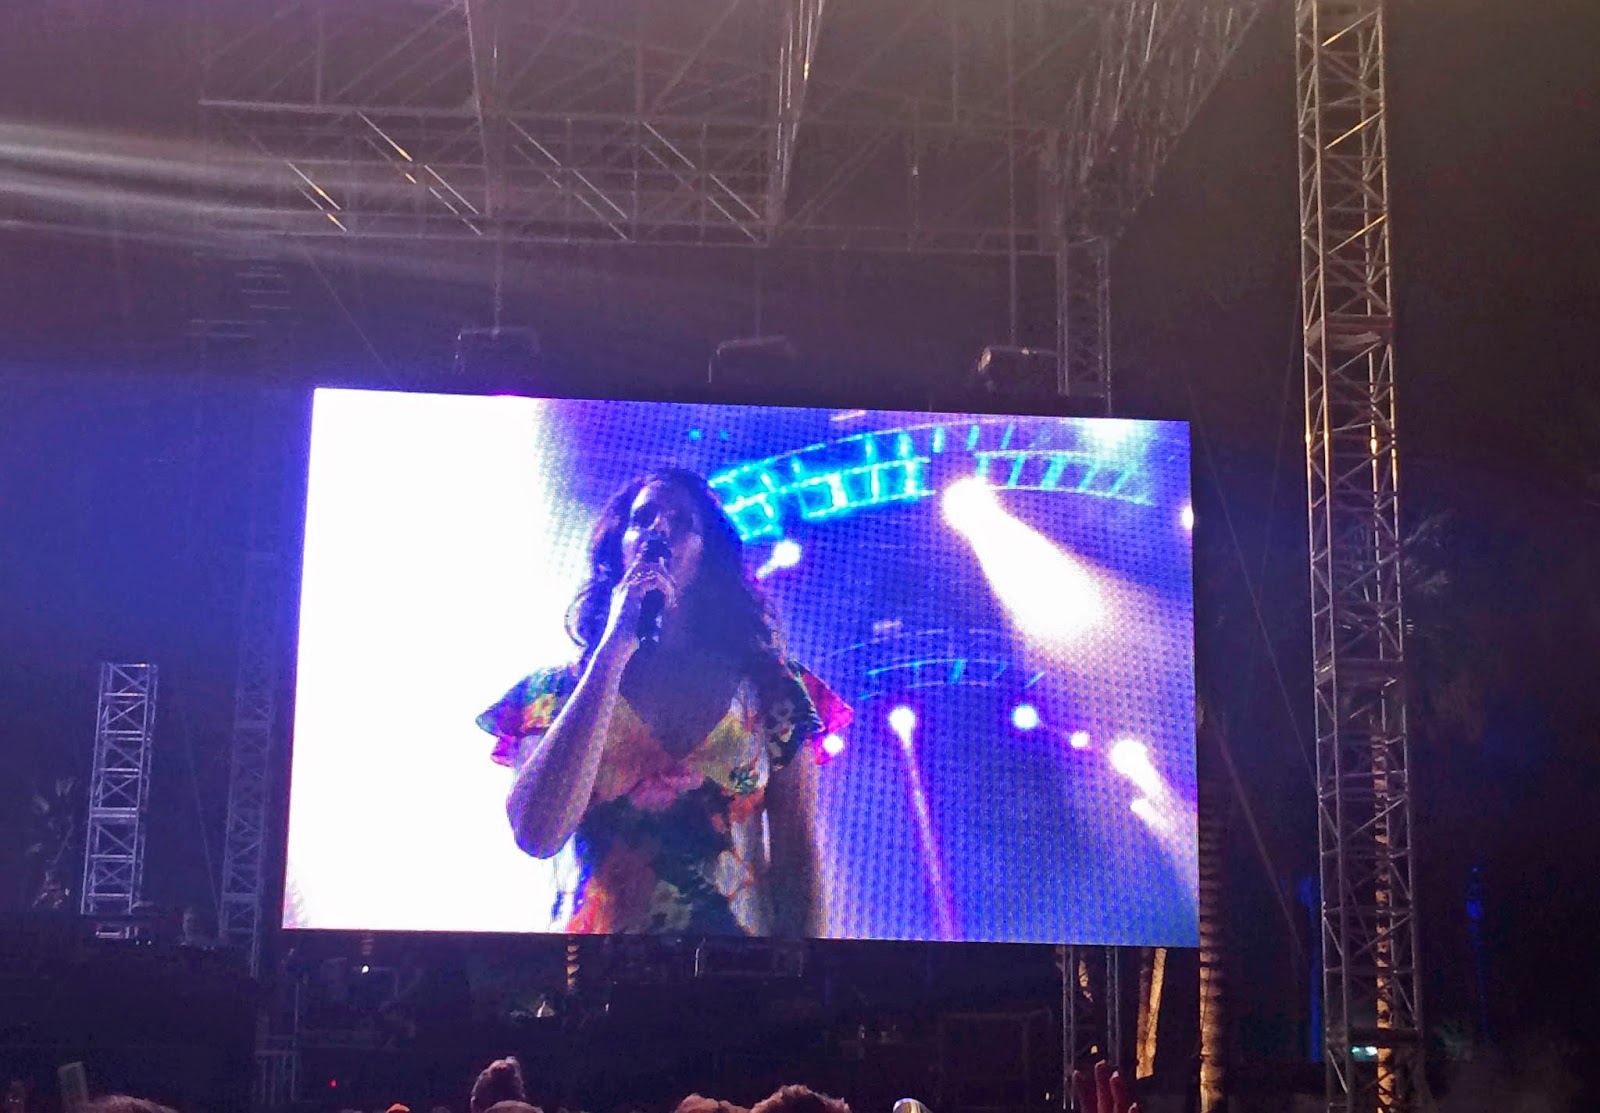 Lana Del Ray performing at Coachella 